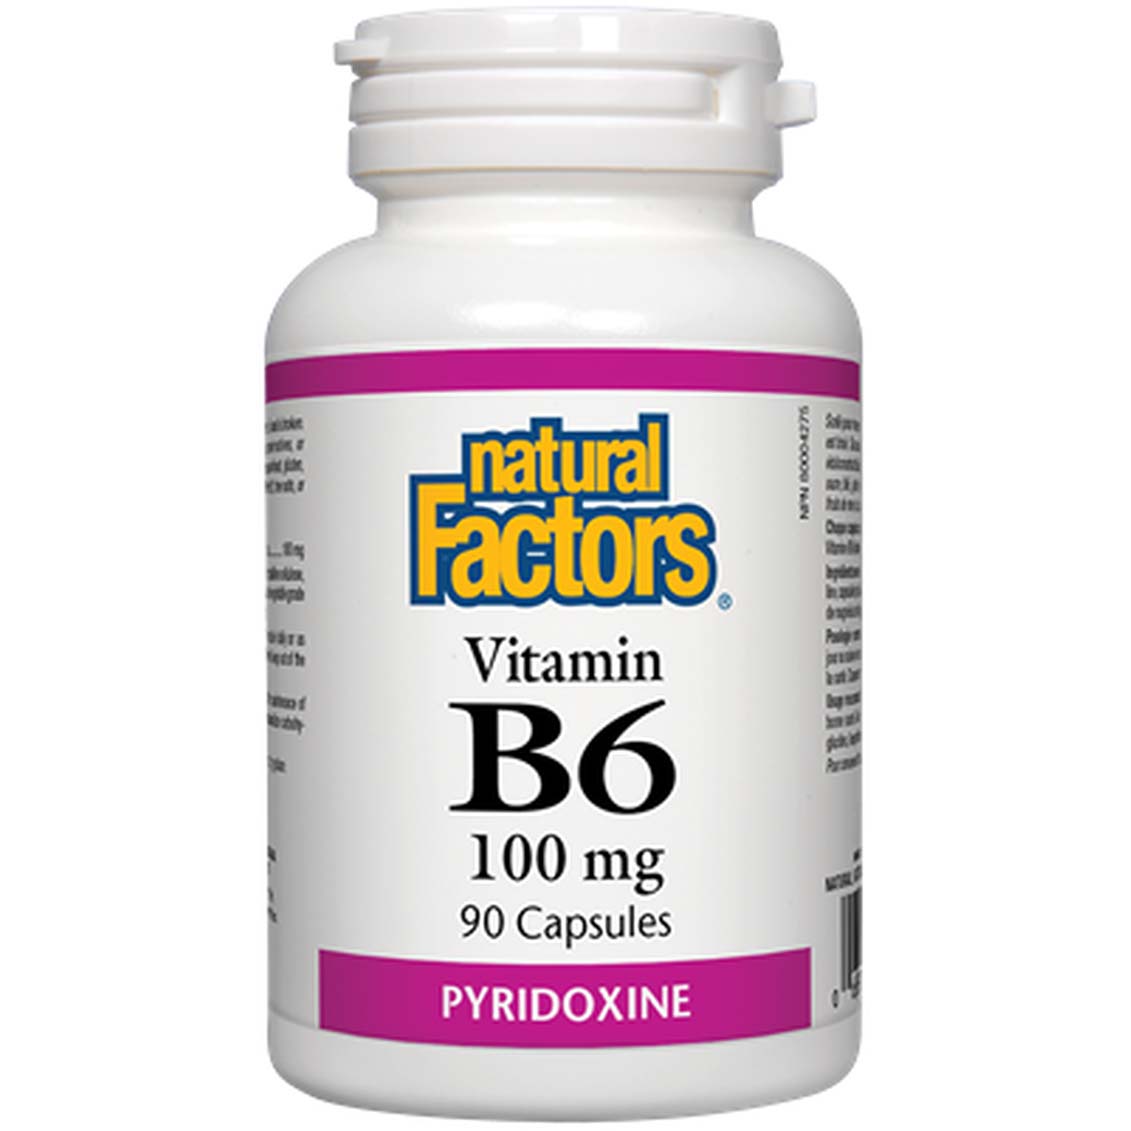 ناتشورال فاكتورز فيتامين ب 6 بيريدوكسين, 100 ملجم, 90 كبسولة